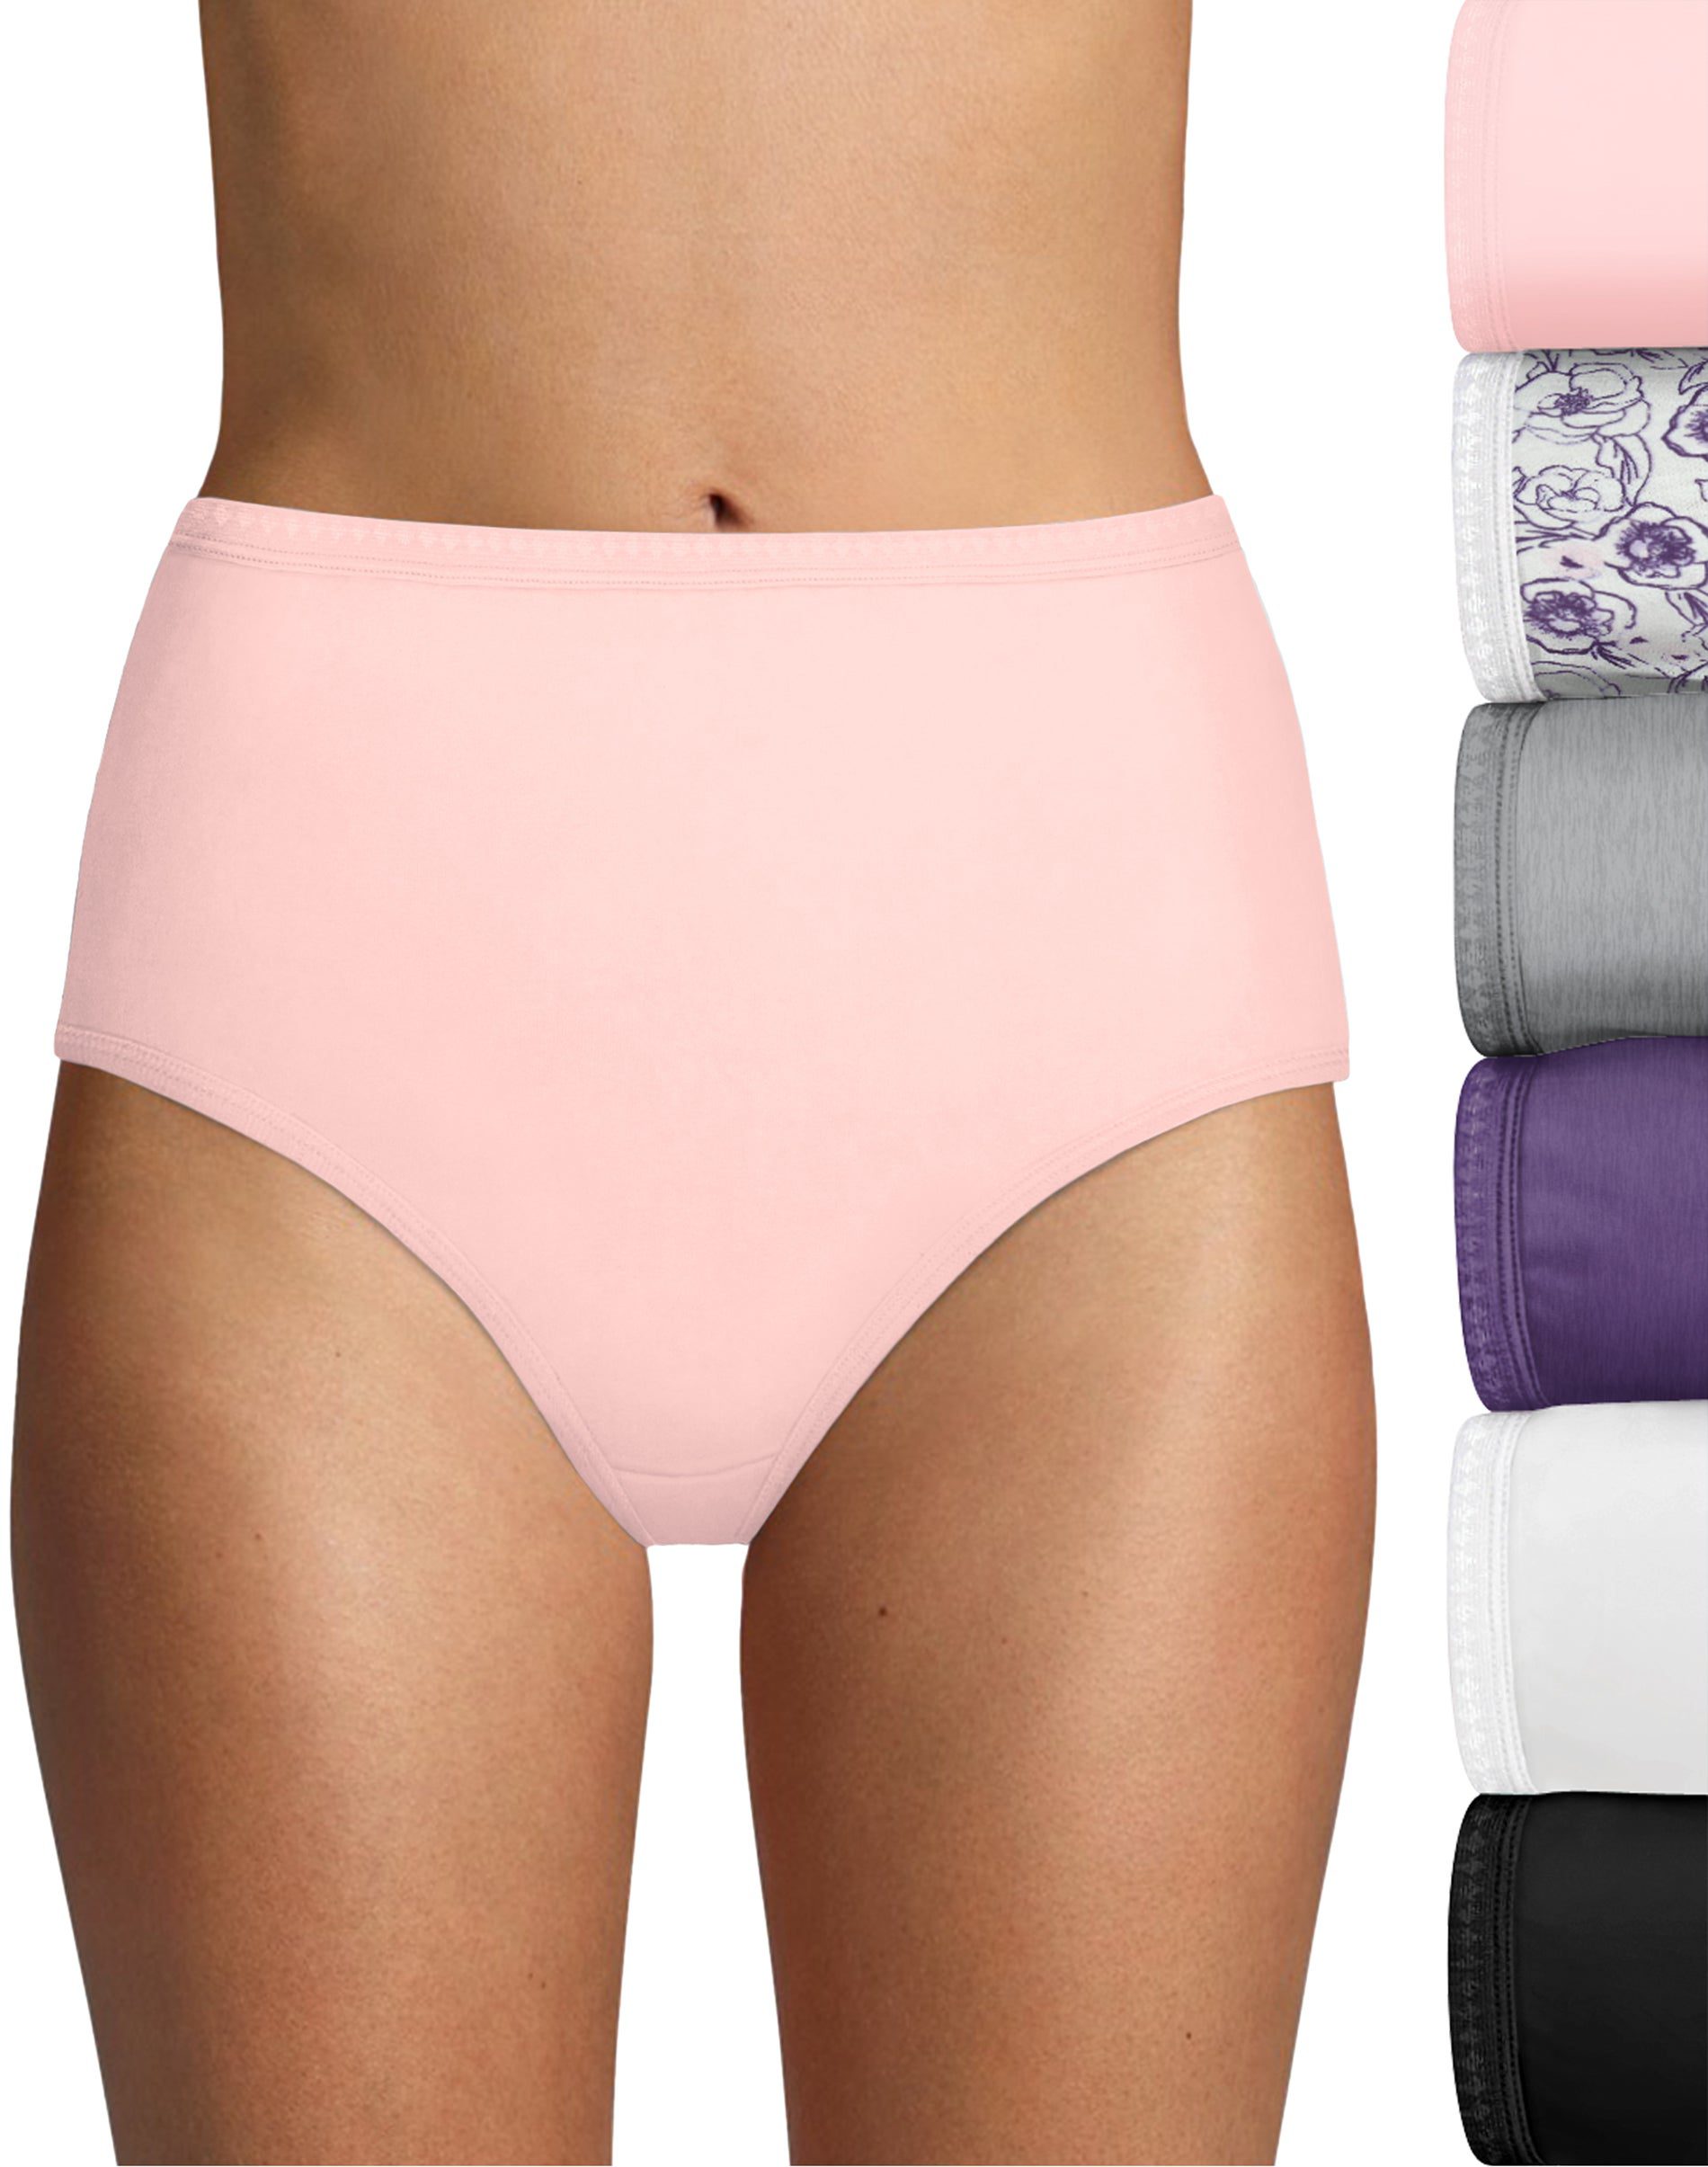 Home WOMEN Underwear Briefs Hanes Breathable Mesh Women's Brief Underwear,  10-Pack